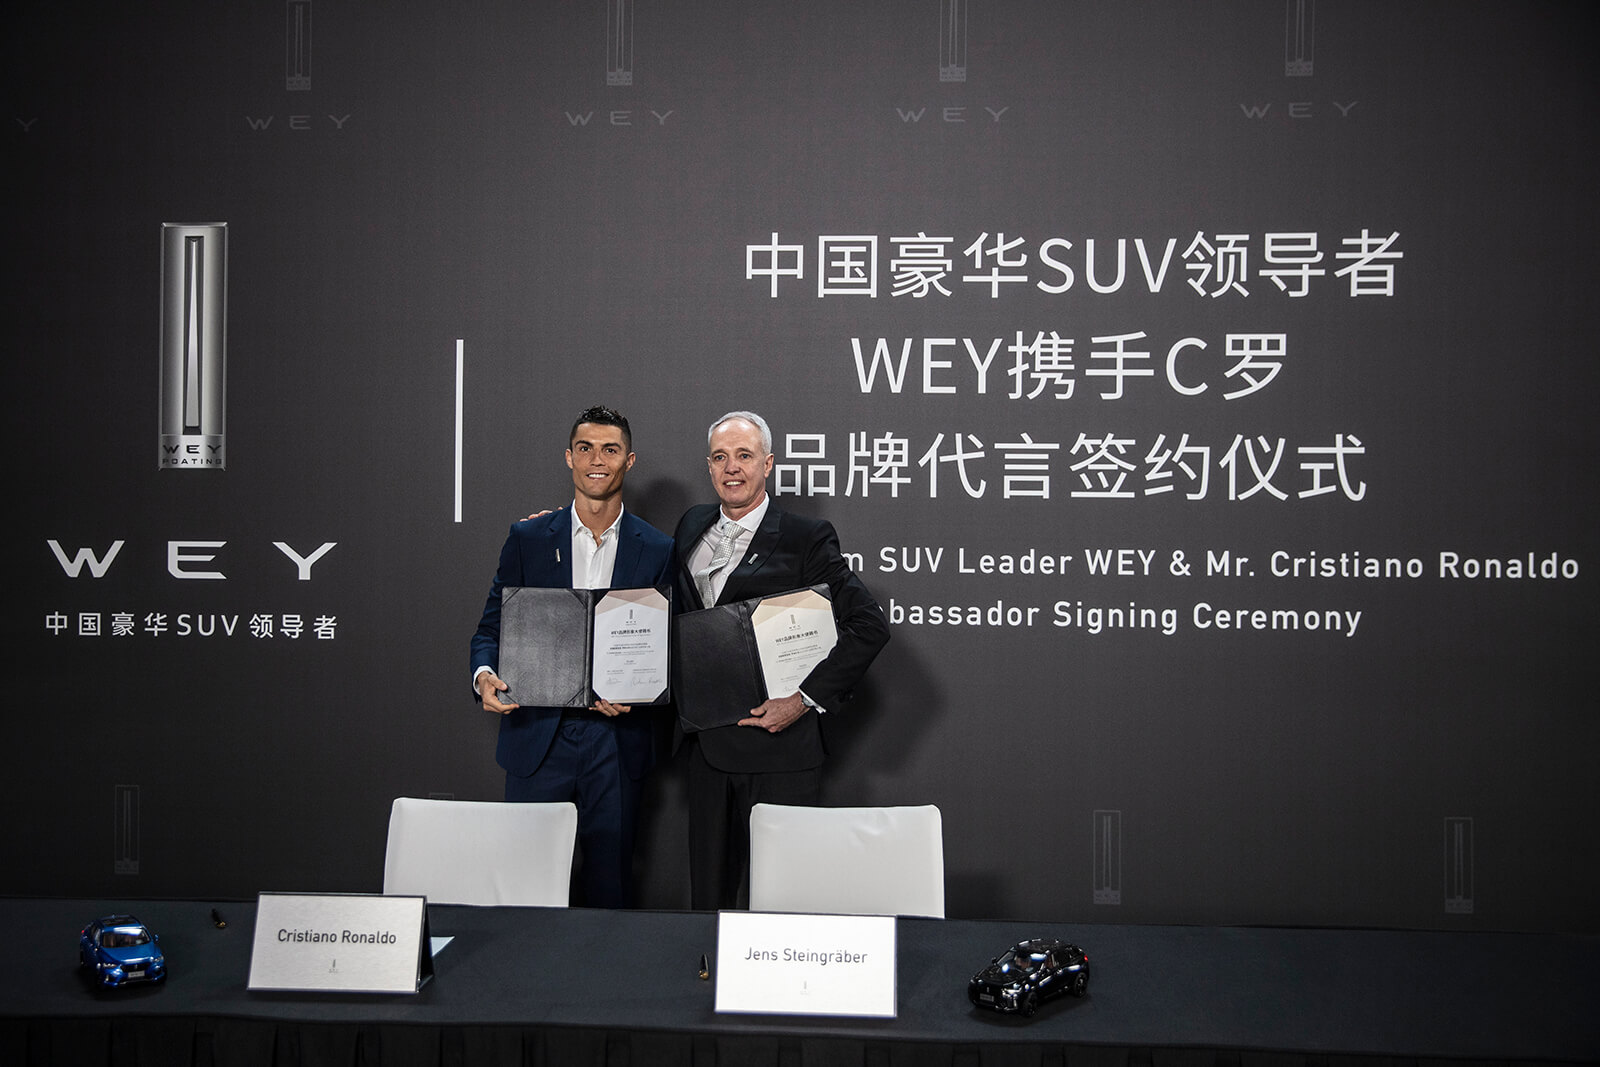 王者聚首 国际足球巨星C罗为中国豪华SUV领导者WEY品牌代言